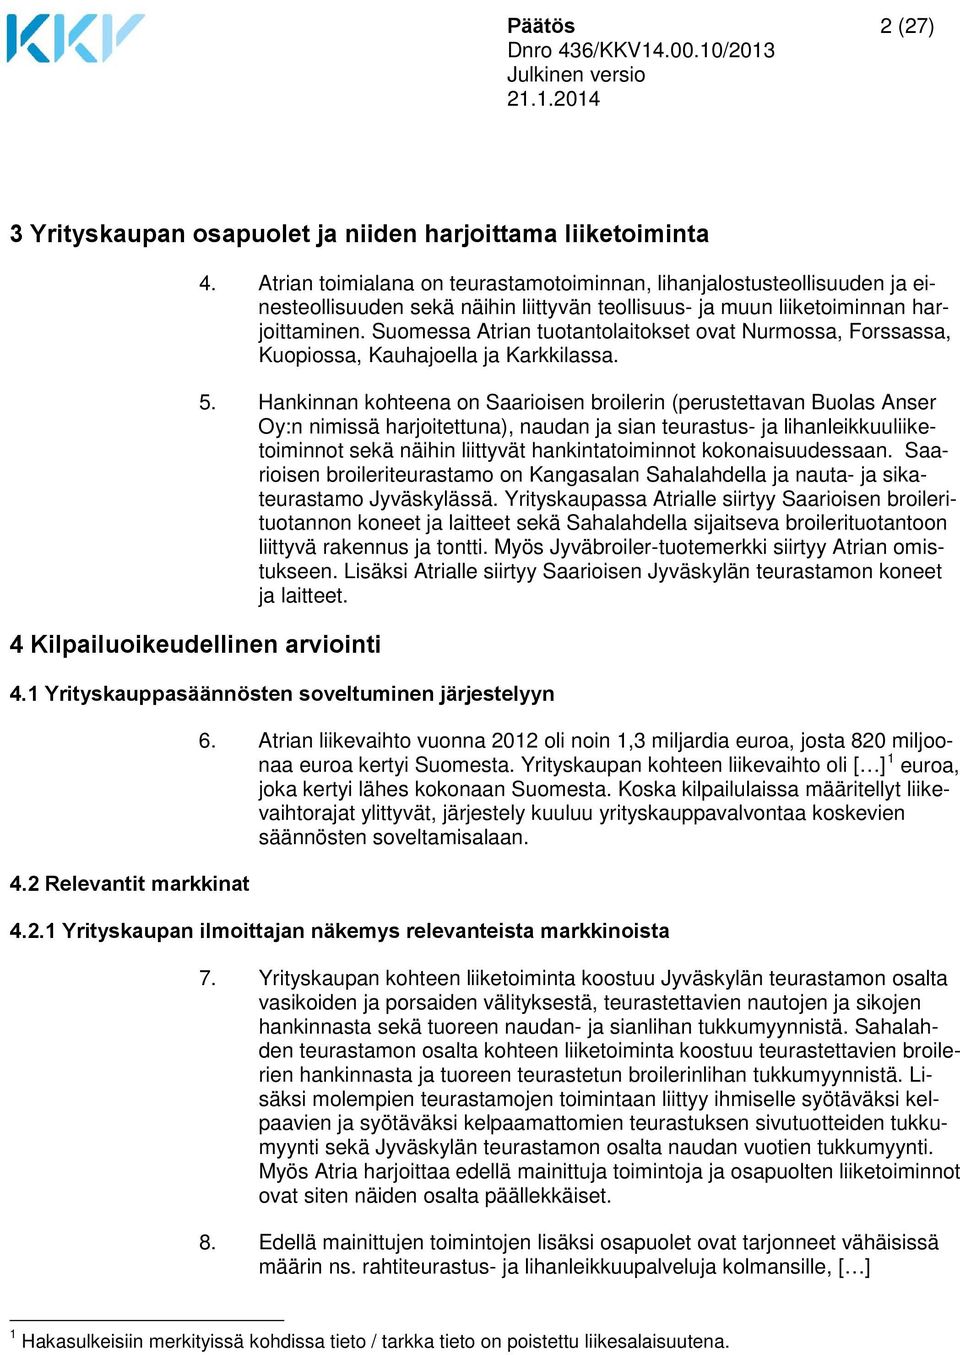 Suomessa Atrian tuotantolaitokset ovat Nurmossa, Forssassa, Kuopiossa, Kauhajoella ja Karkkilassa. 5.